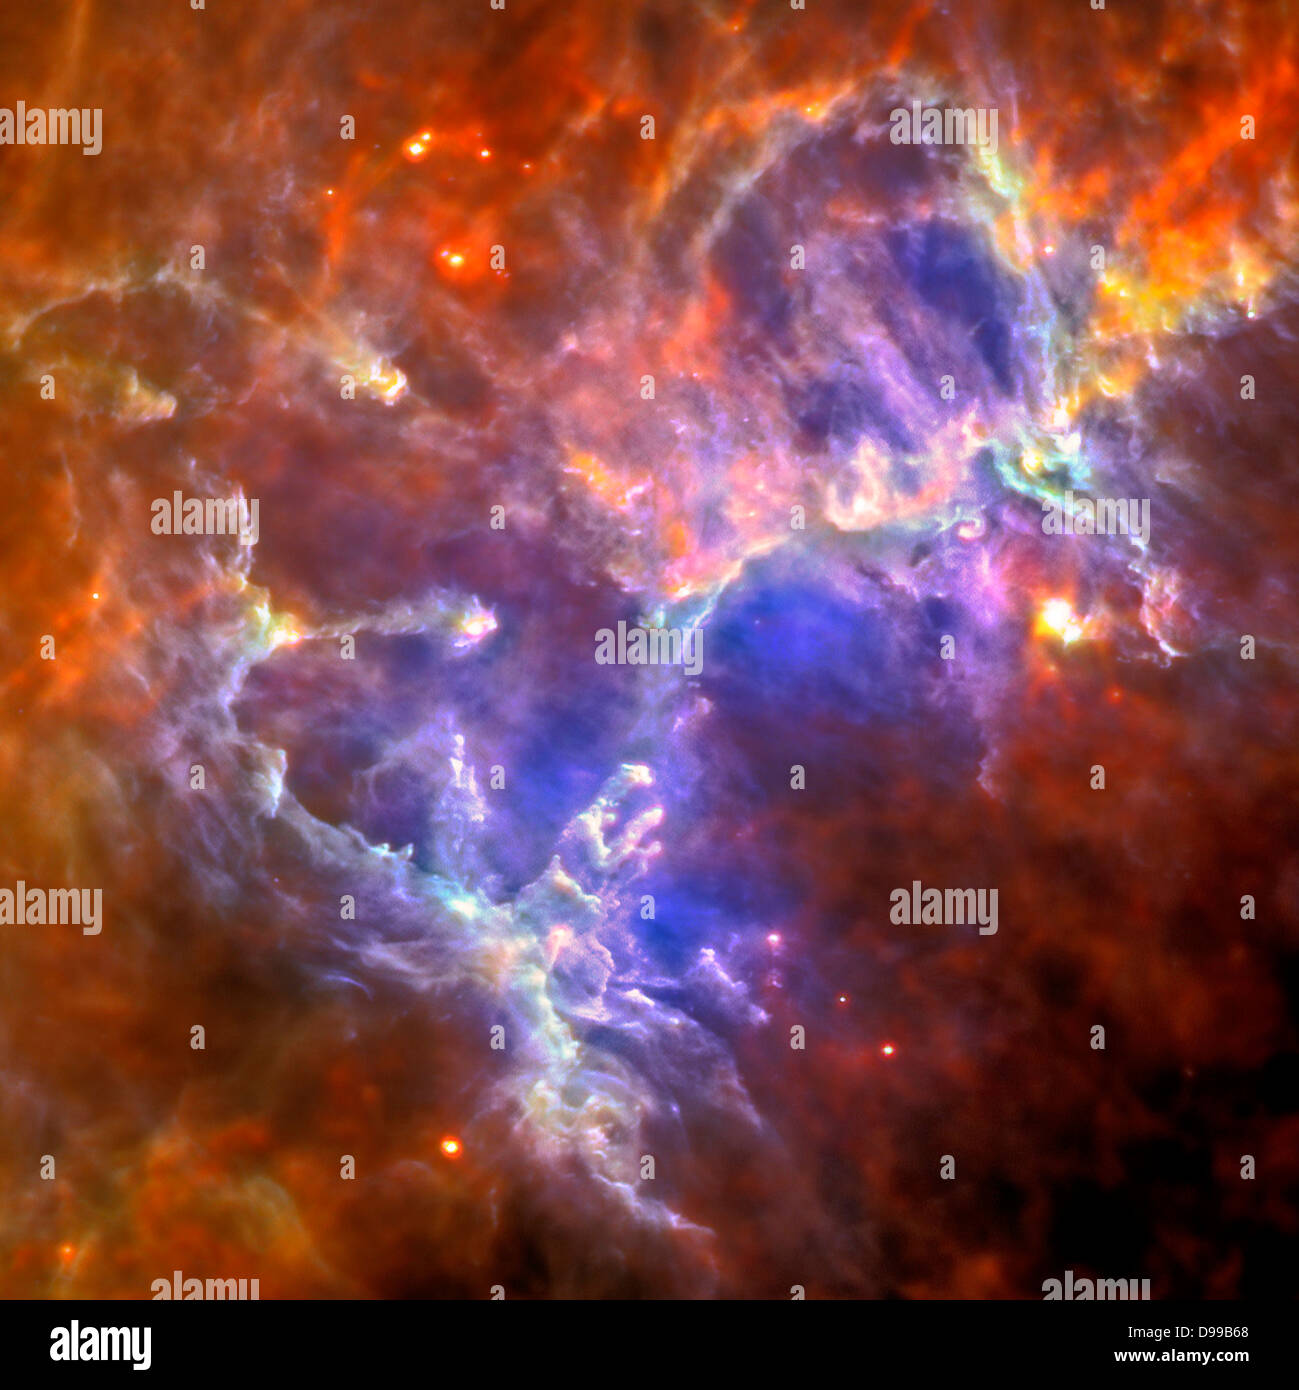 Diese Herschel Bild der Adlernebel zeigt die selbständige Emission aus Gas und Staub des intensiv kalten Nebels. Stockfoto